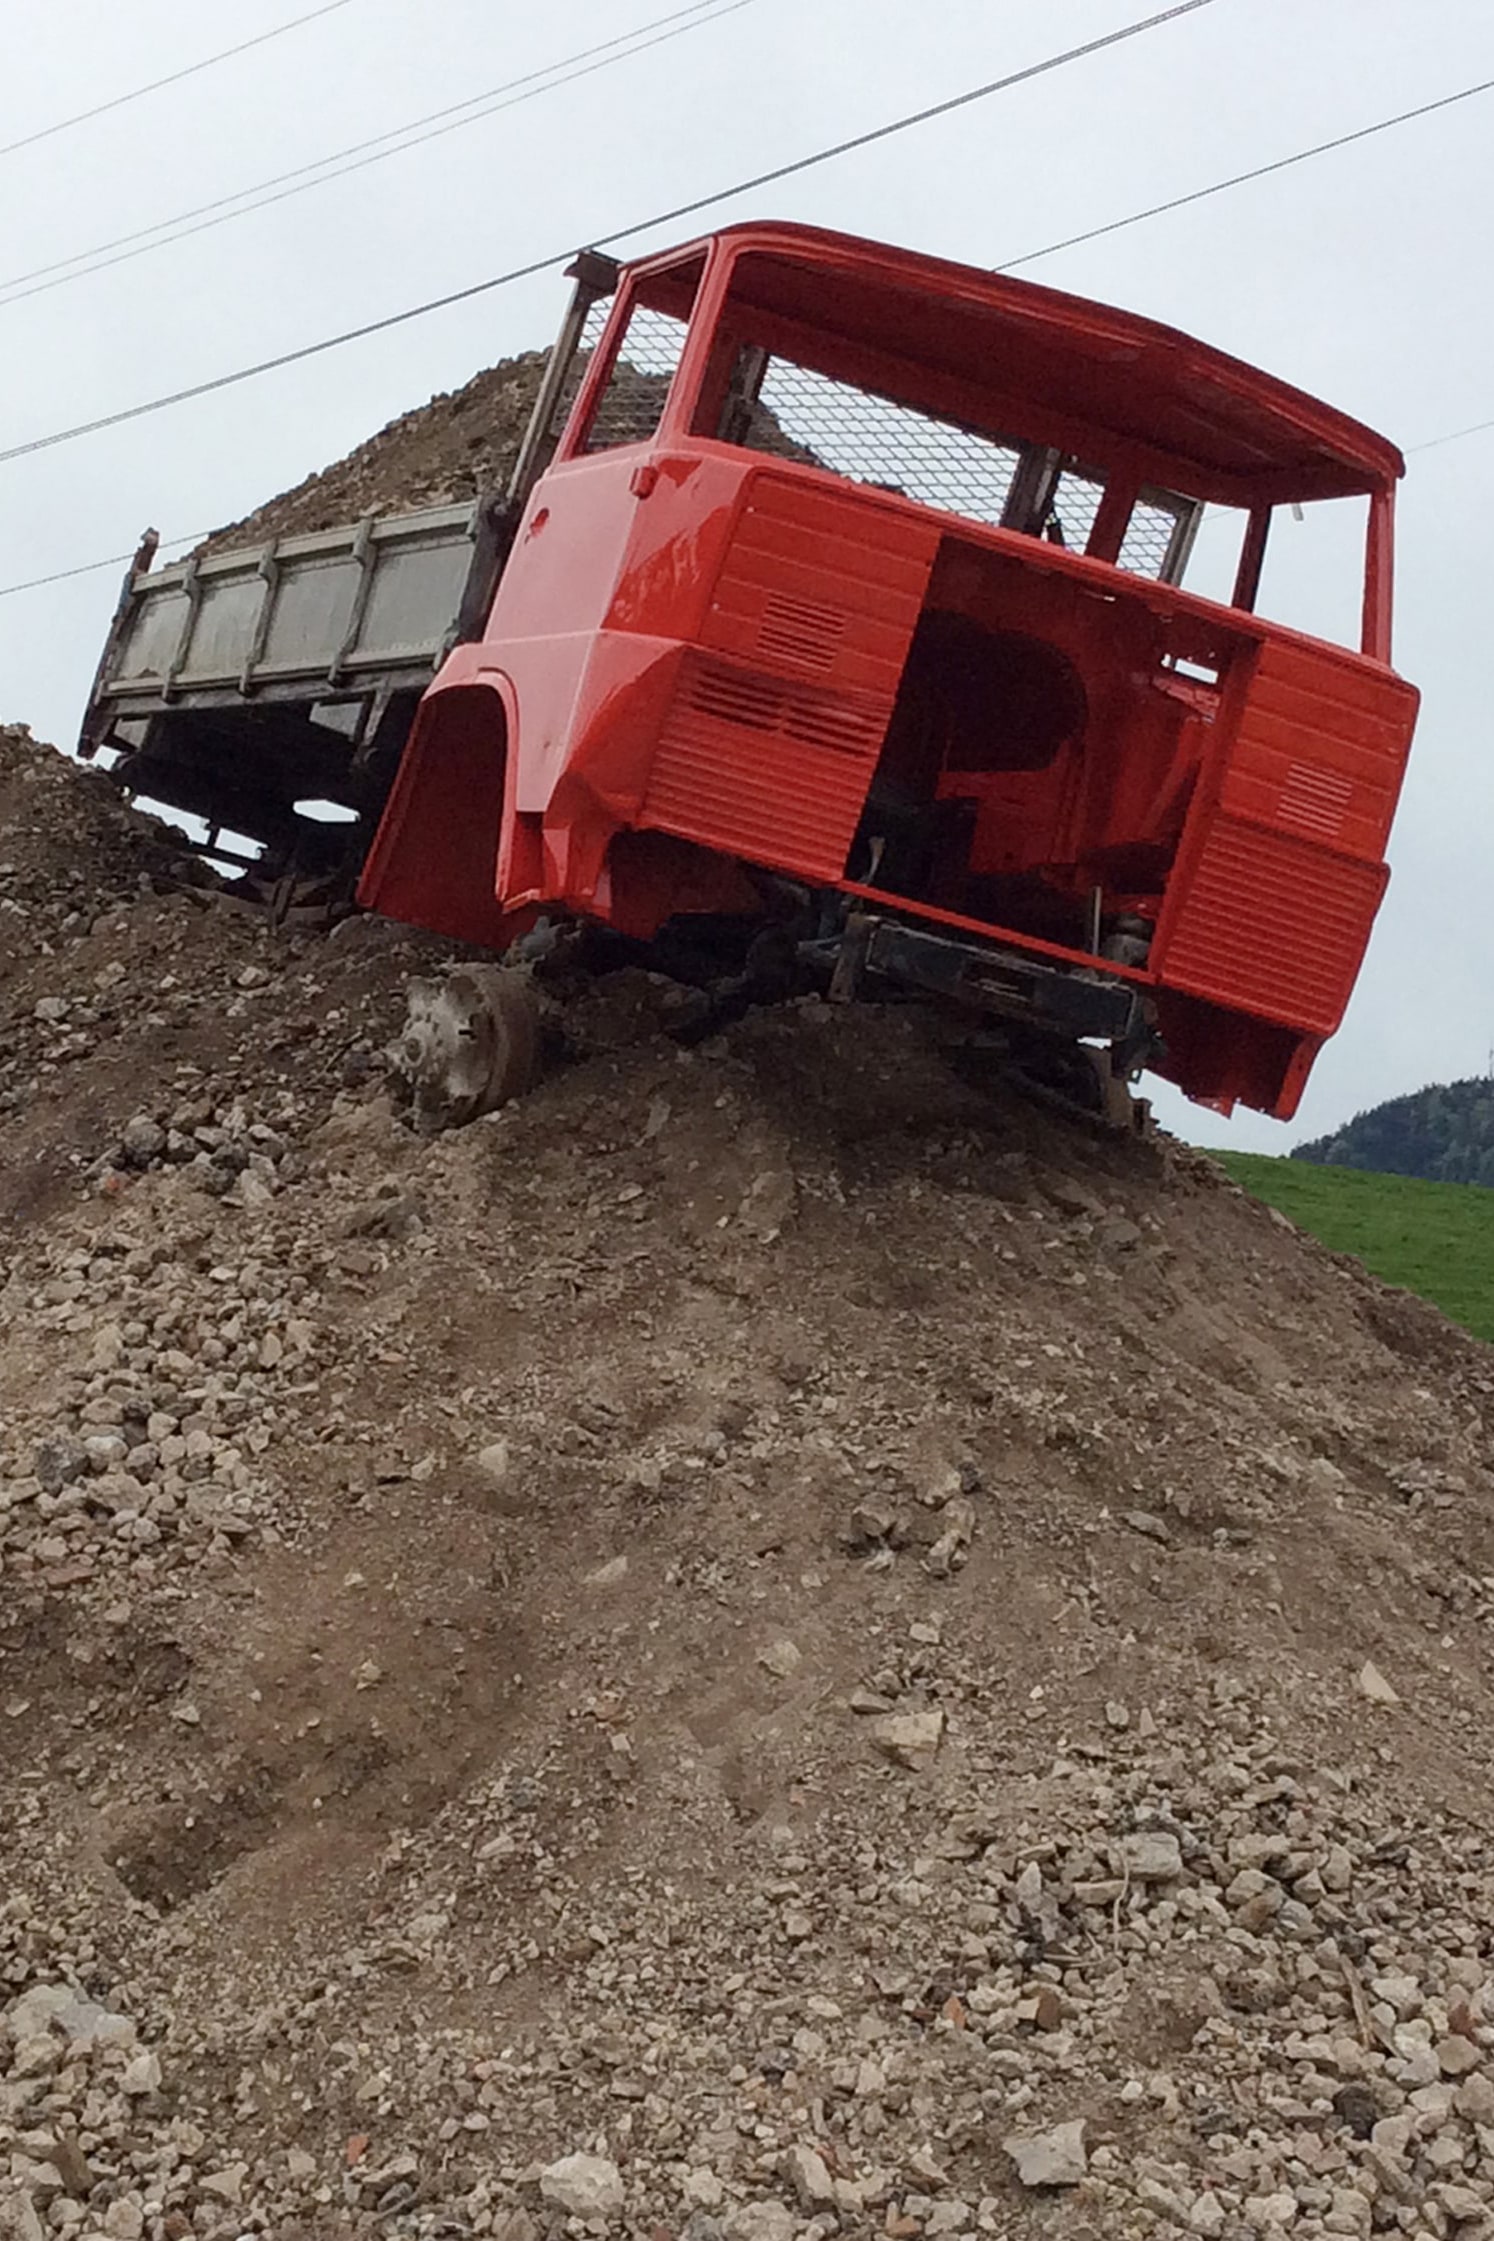 Henschel camion Lastwagen führerkabine Kiesgrube Kieshügel art et Motiers Gruppenausstellung outdoor Situationsprojekt